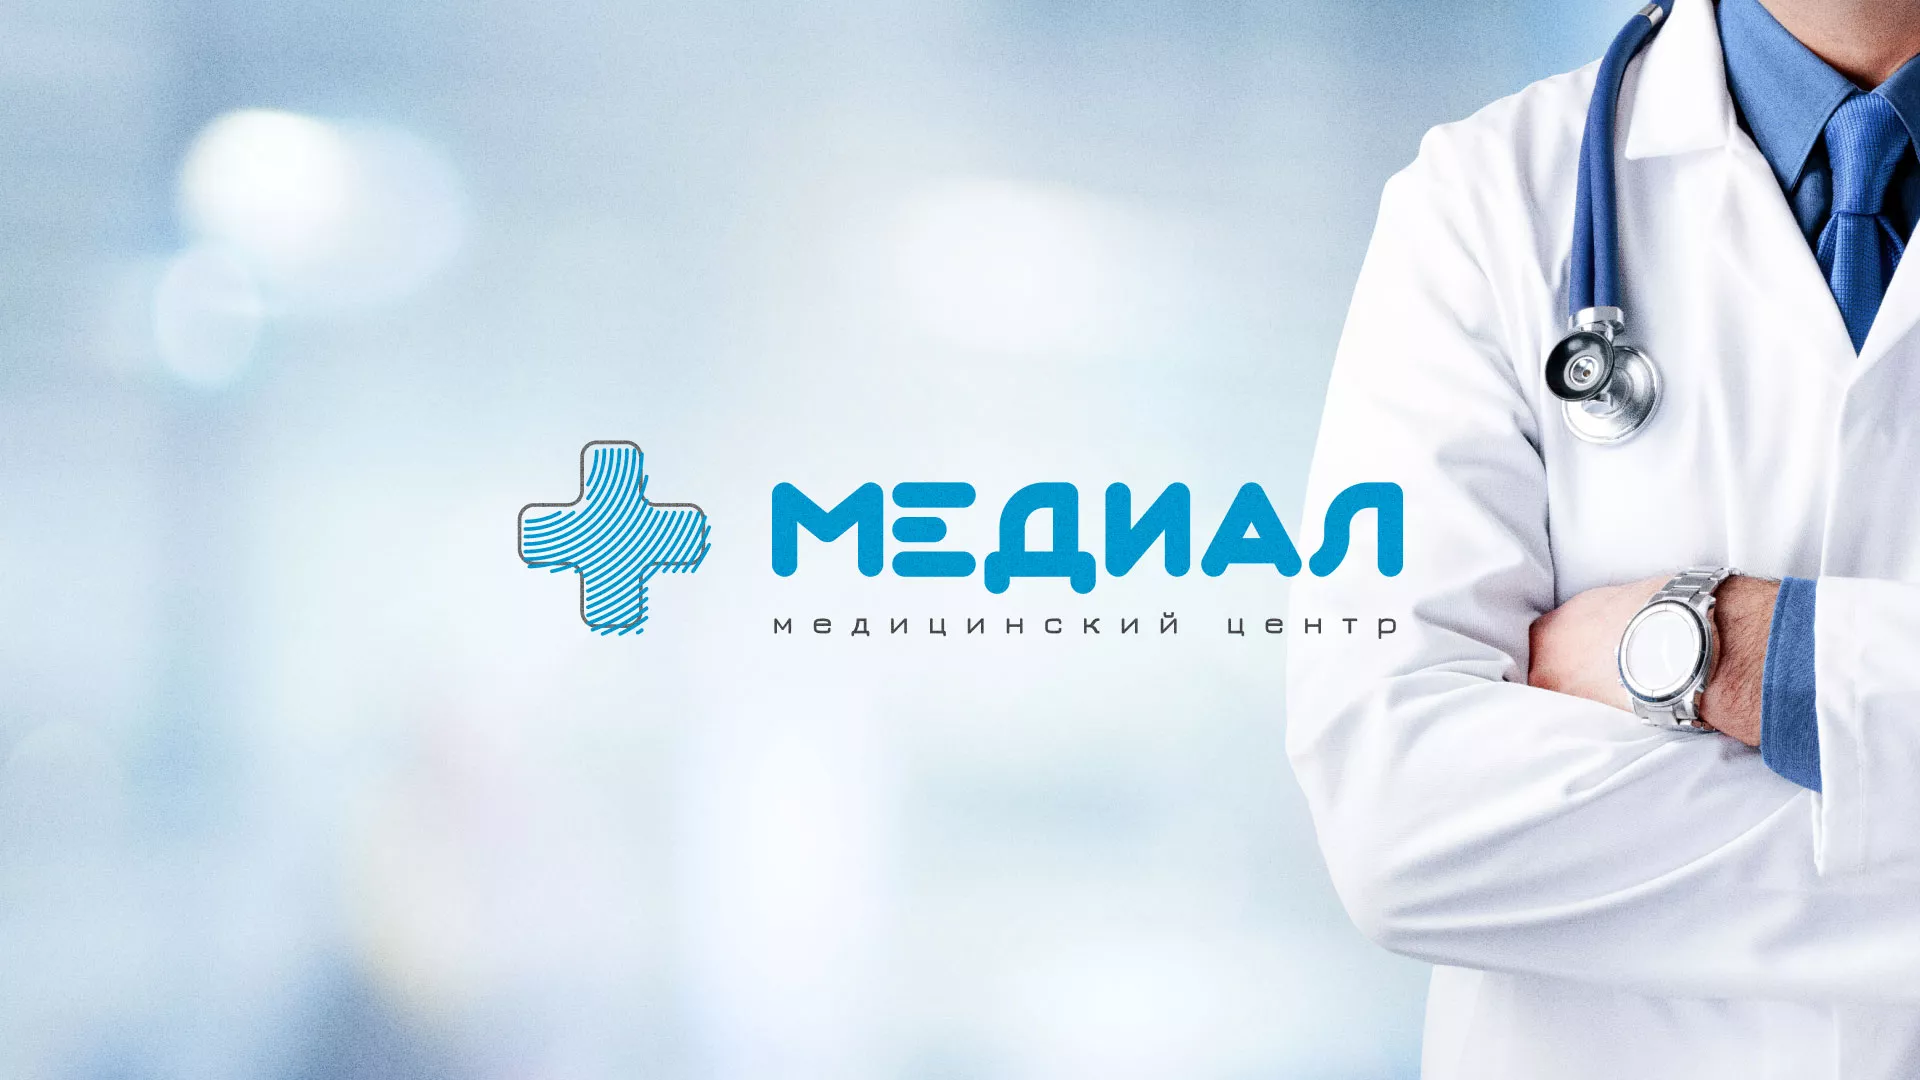 Создание сайта для медицинского центра «Медиал» в Улане-Удэ